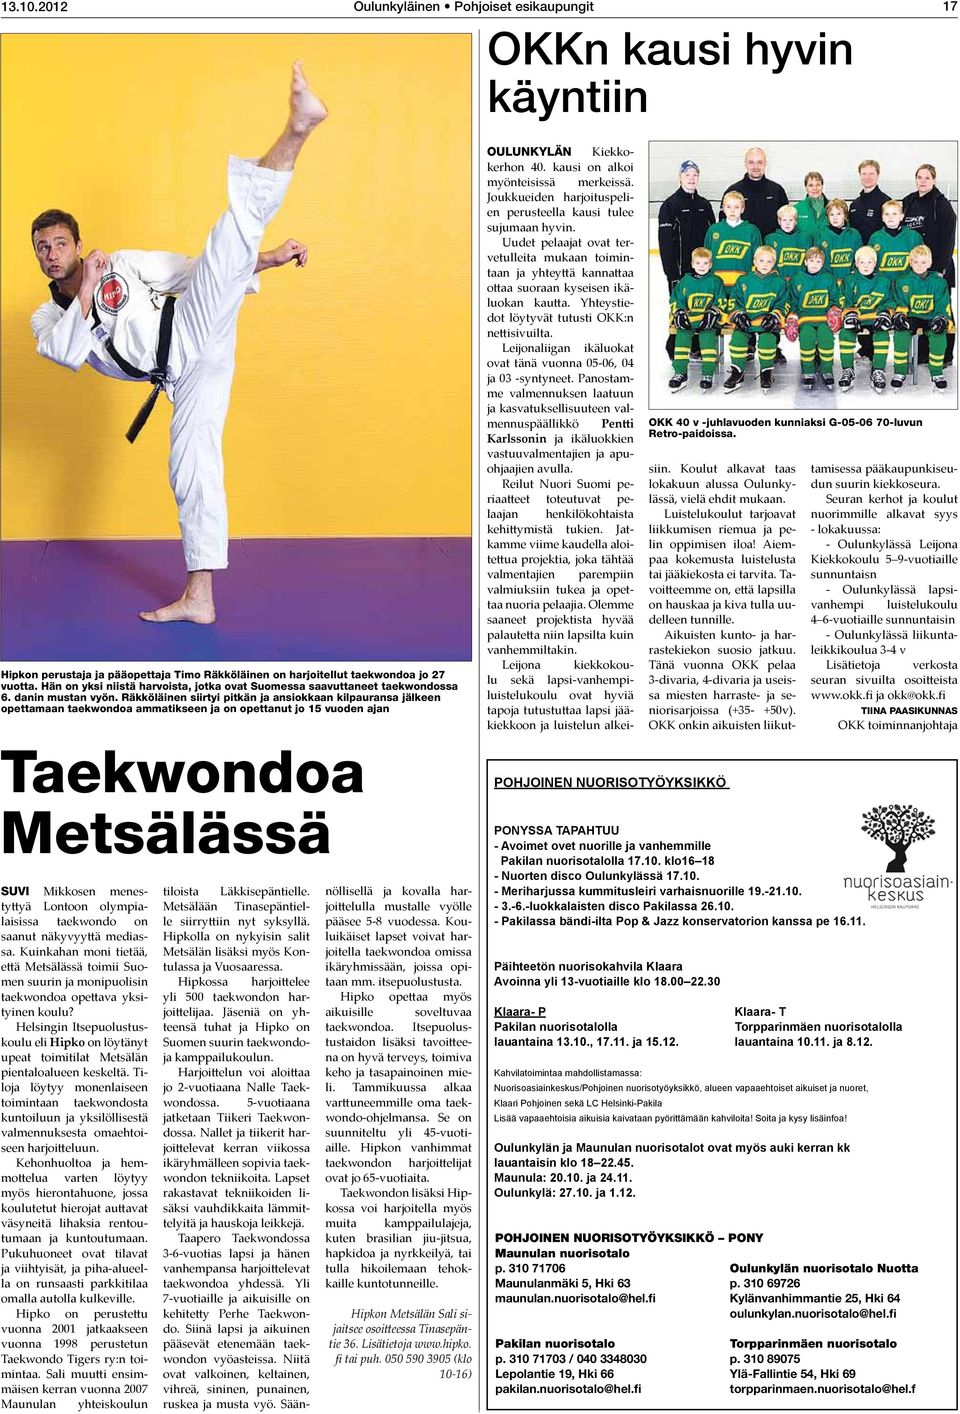 Räkköläinen siirtyi pitkän ja ansiokkaan kilpauransa jälkeen opettamaan taekwondoa ammatikseen ja on opettanut jo 15 vuoden ajan Oulunkylän Kiekkokerhon 40. kausi on alkoi myönteisissä merkeissä.